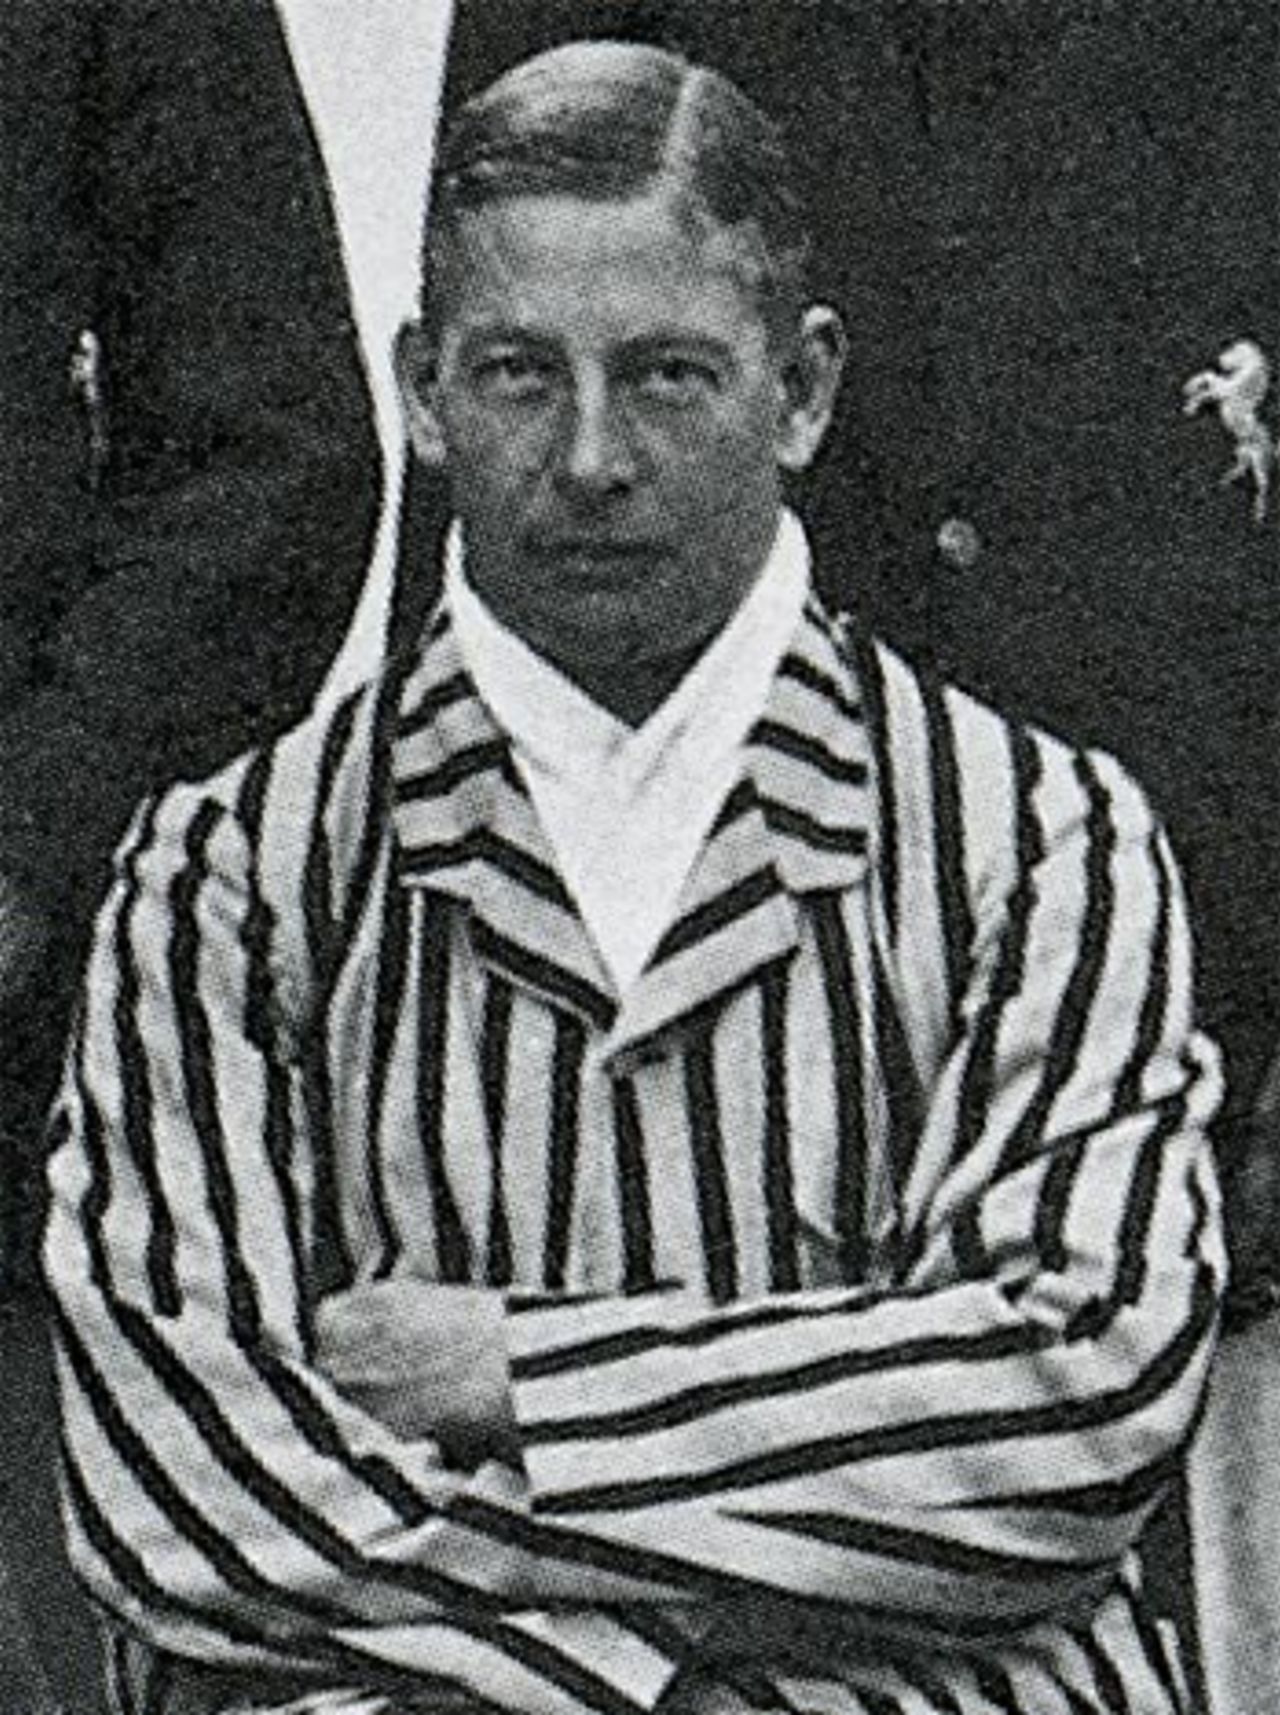 Douglas Carr in 1909